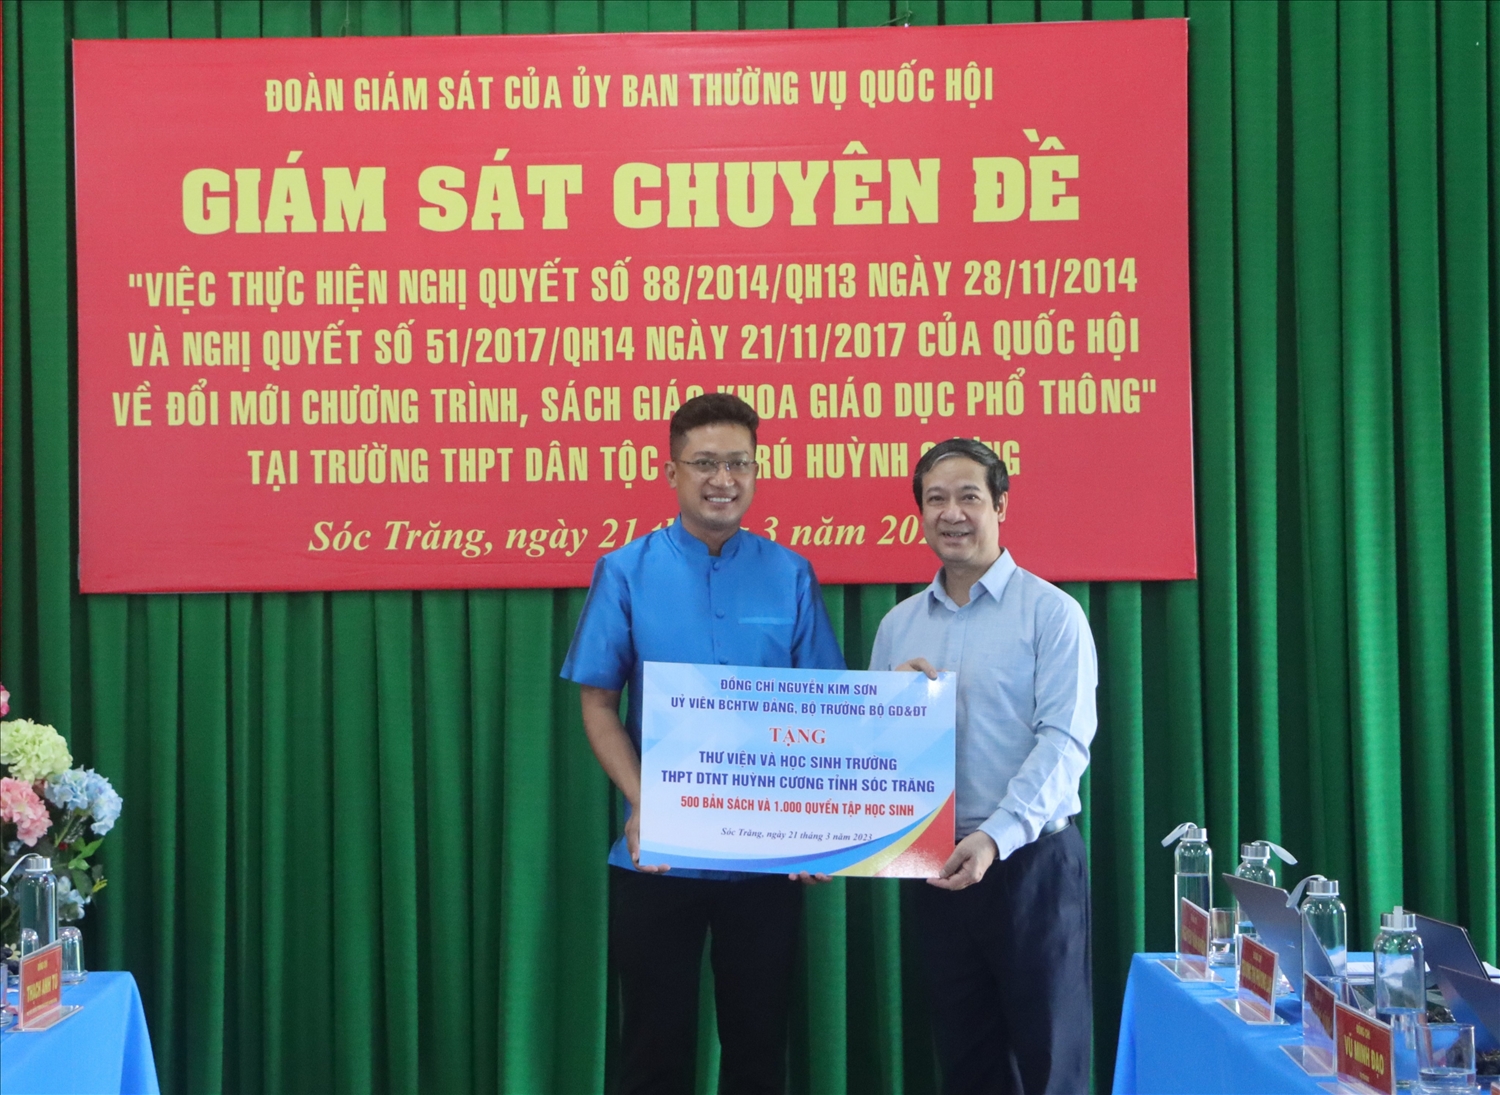 Bộ trưởng Bộ Giáo dục và Đào tạo Nguyễn Kim Sơn đã tặng thư viện sách cho học sinh Trường Huỳnh Cương